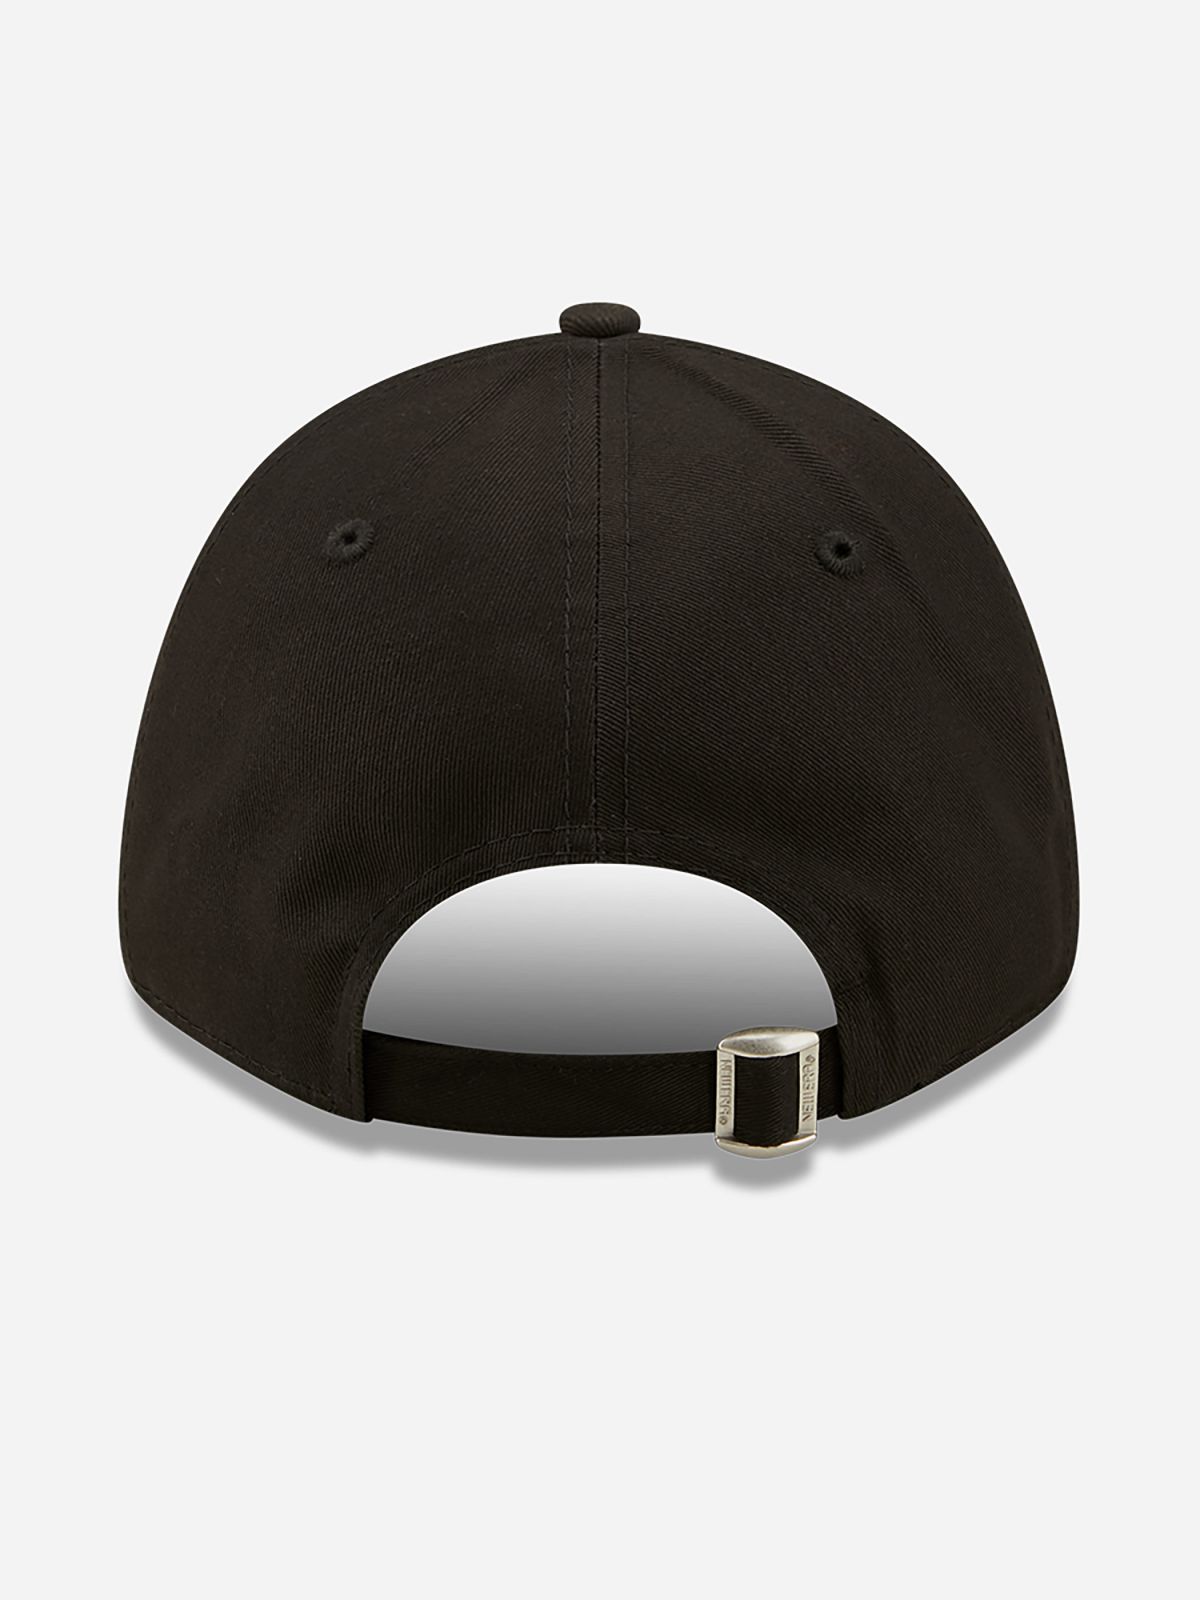  כובע מצחייה עם הדפס LA רקום / גברים של NEW ERA